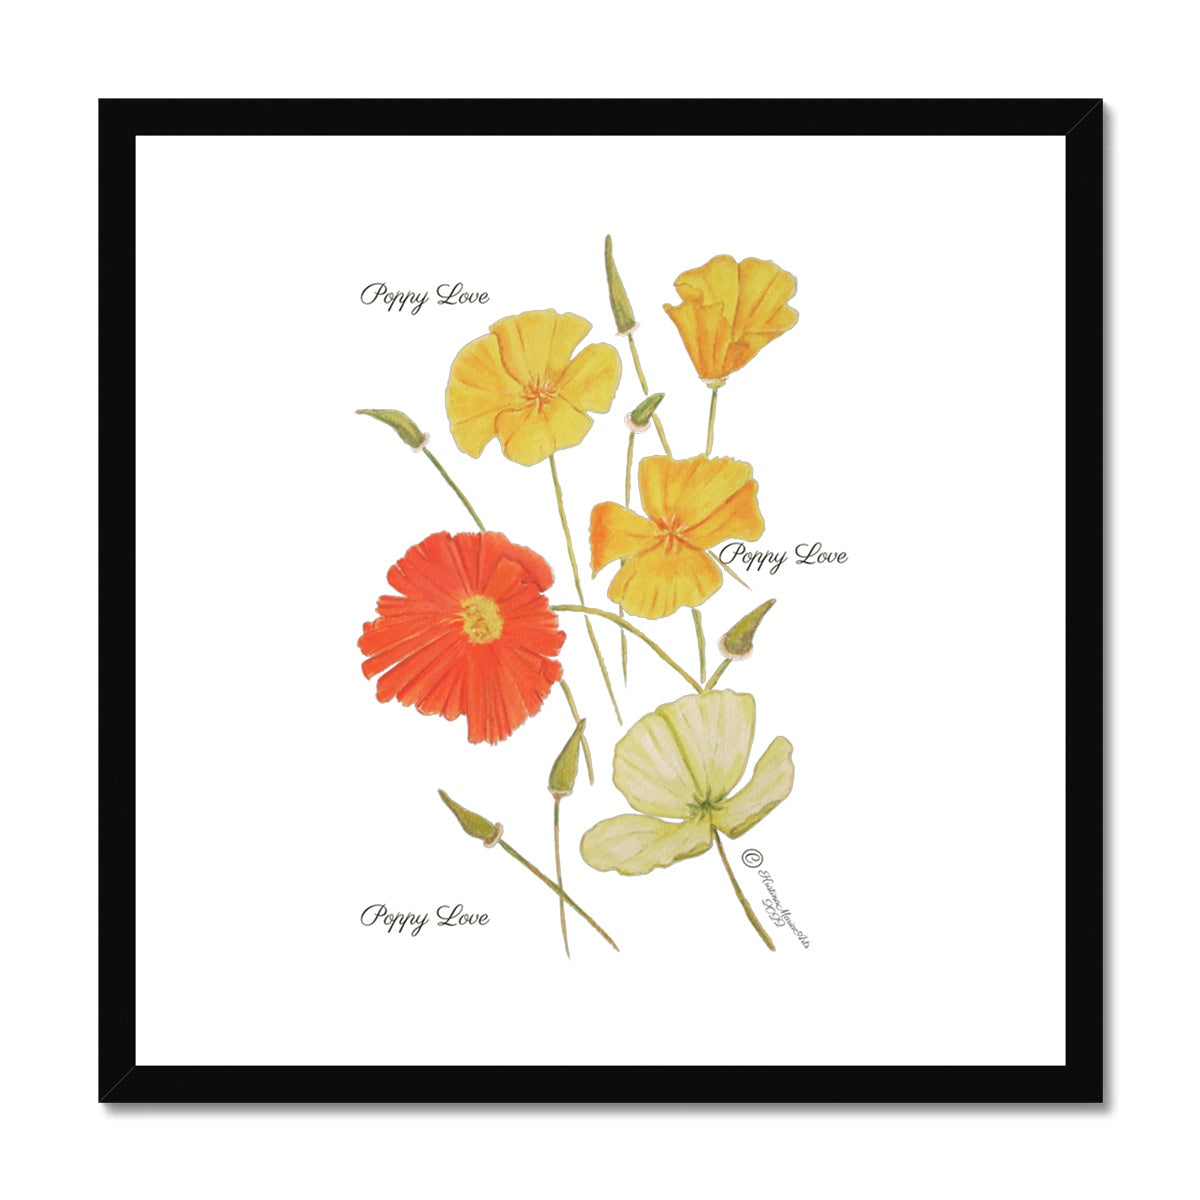 Poppy Love Framed & Mounted Print